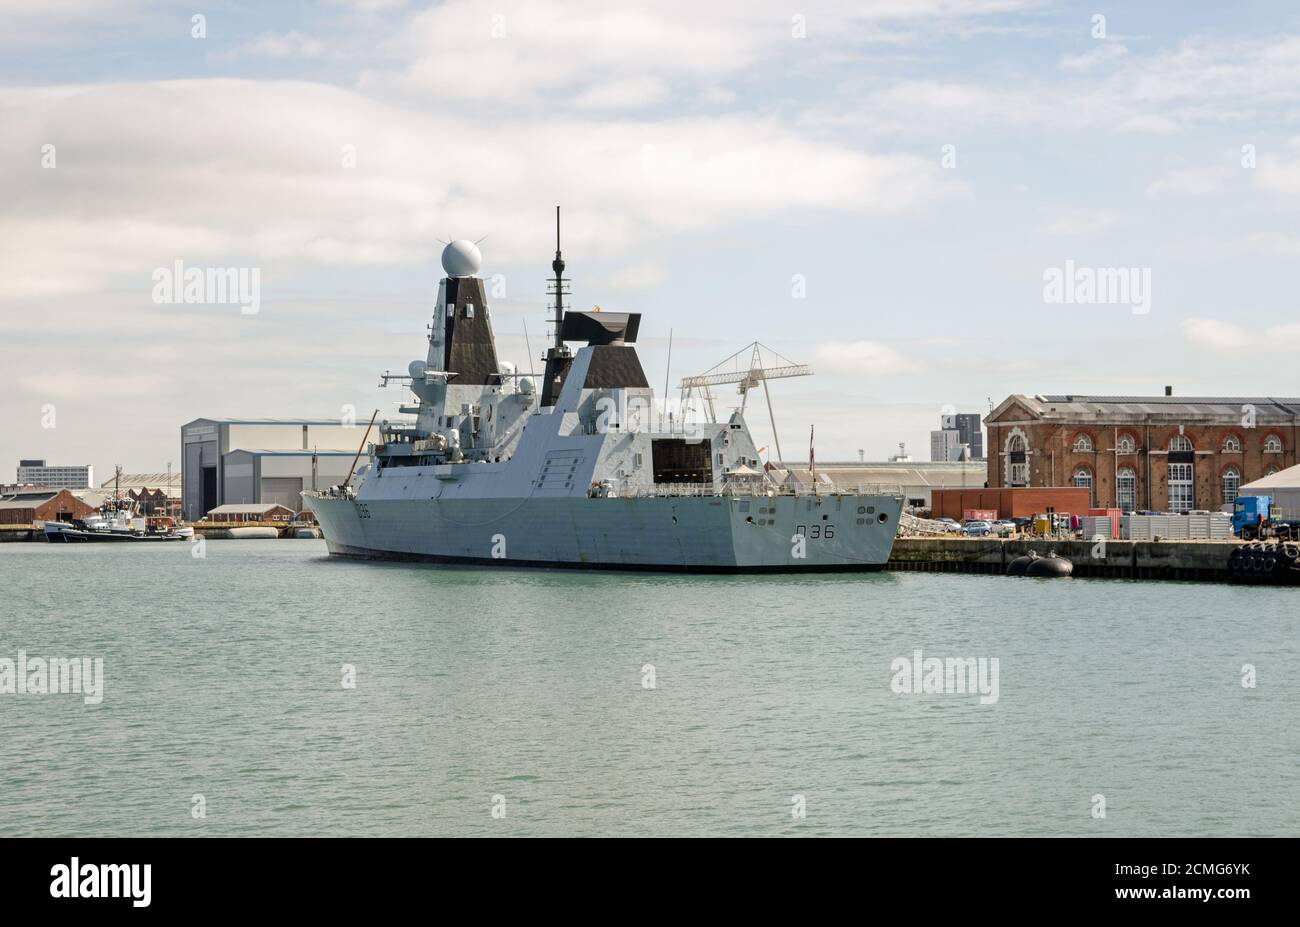 Portsmouth, Royaume-Uni - 8 septembre 2020 : le destroyer de la Royal Navy HMS Defender, D36, amarré au port de Portsmouth, Hampshire, lors d'une journée d'été ensoleillée. Banque D'Images